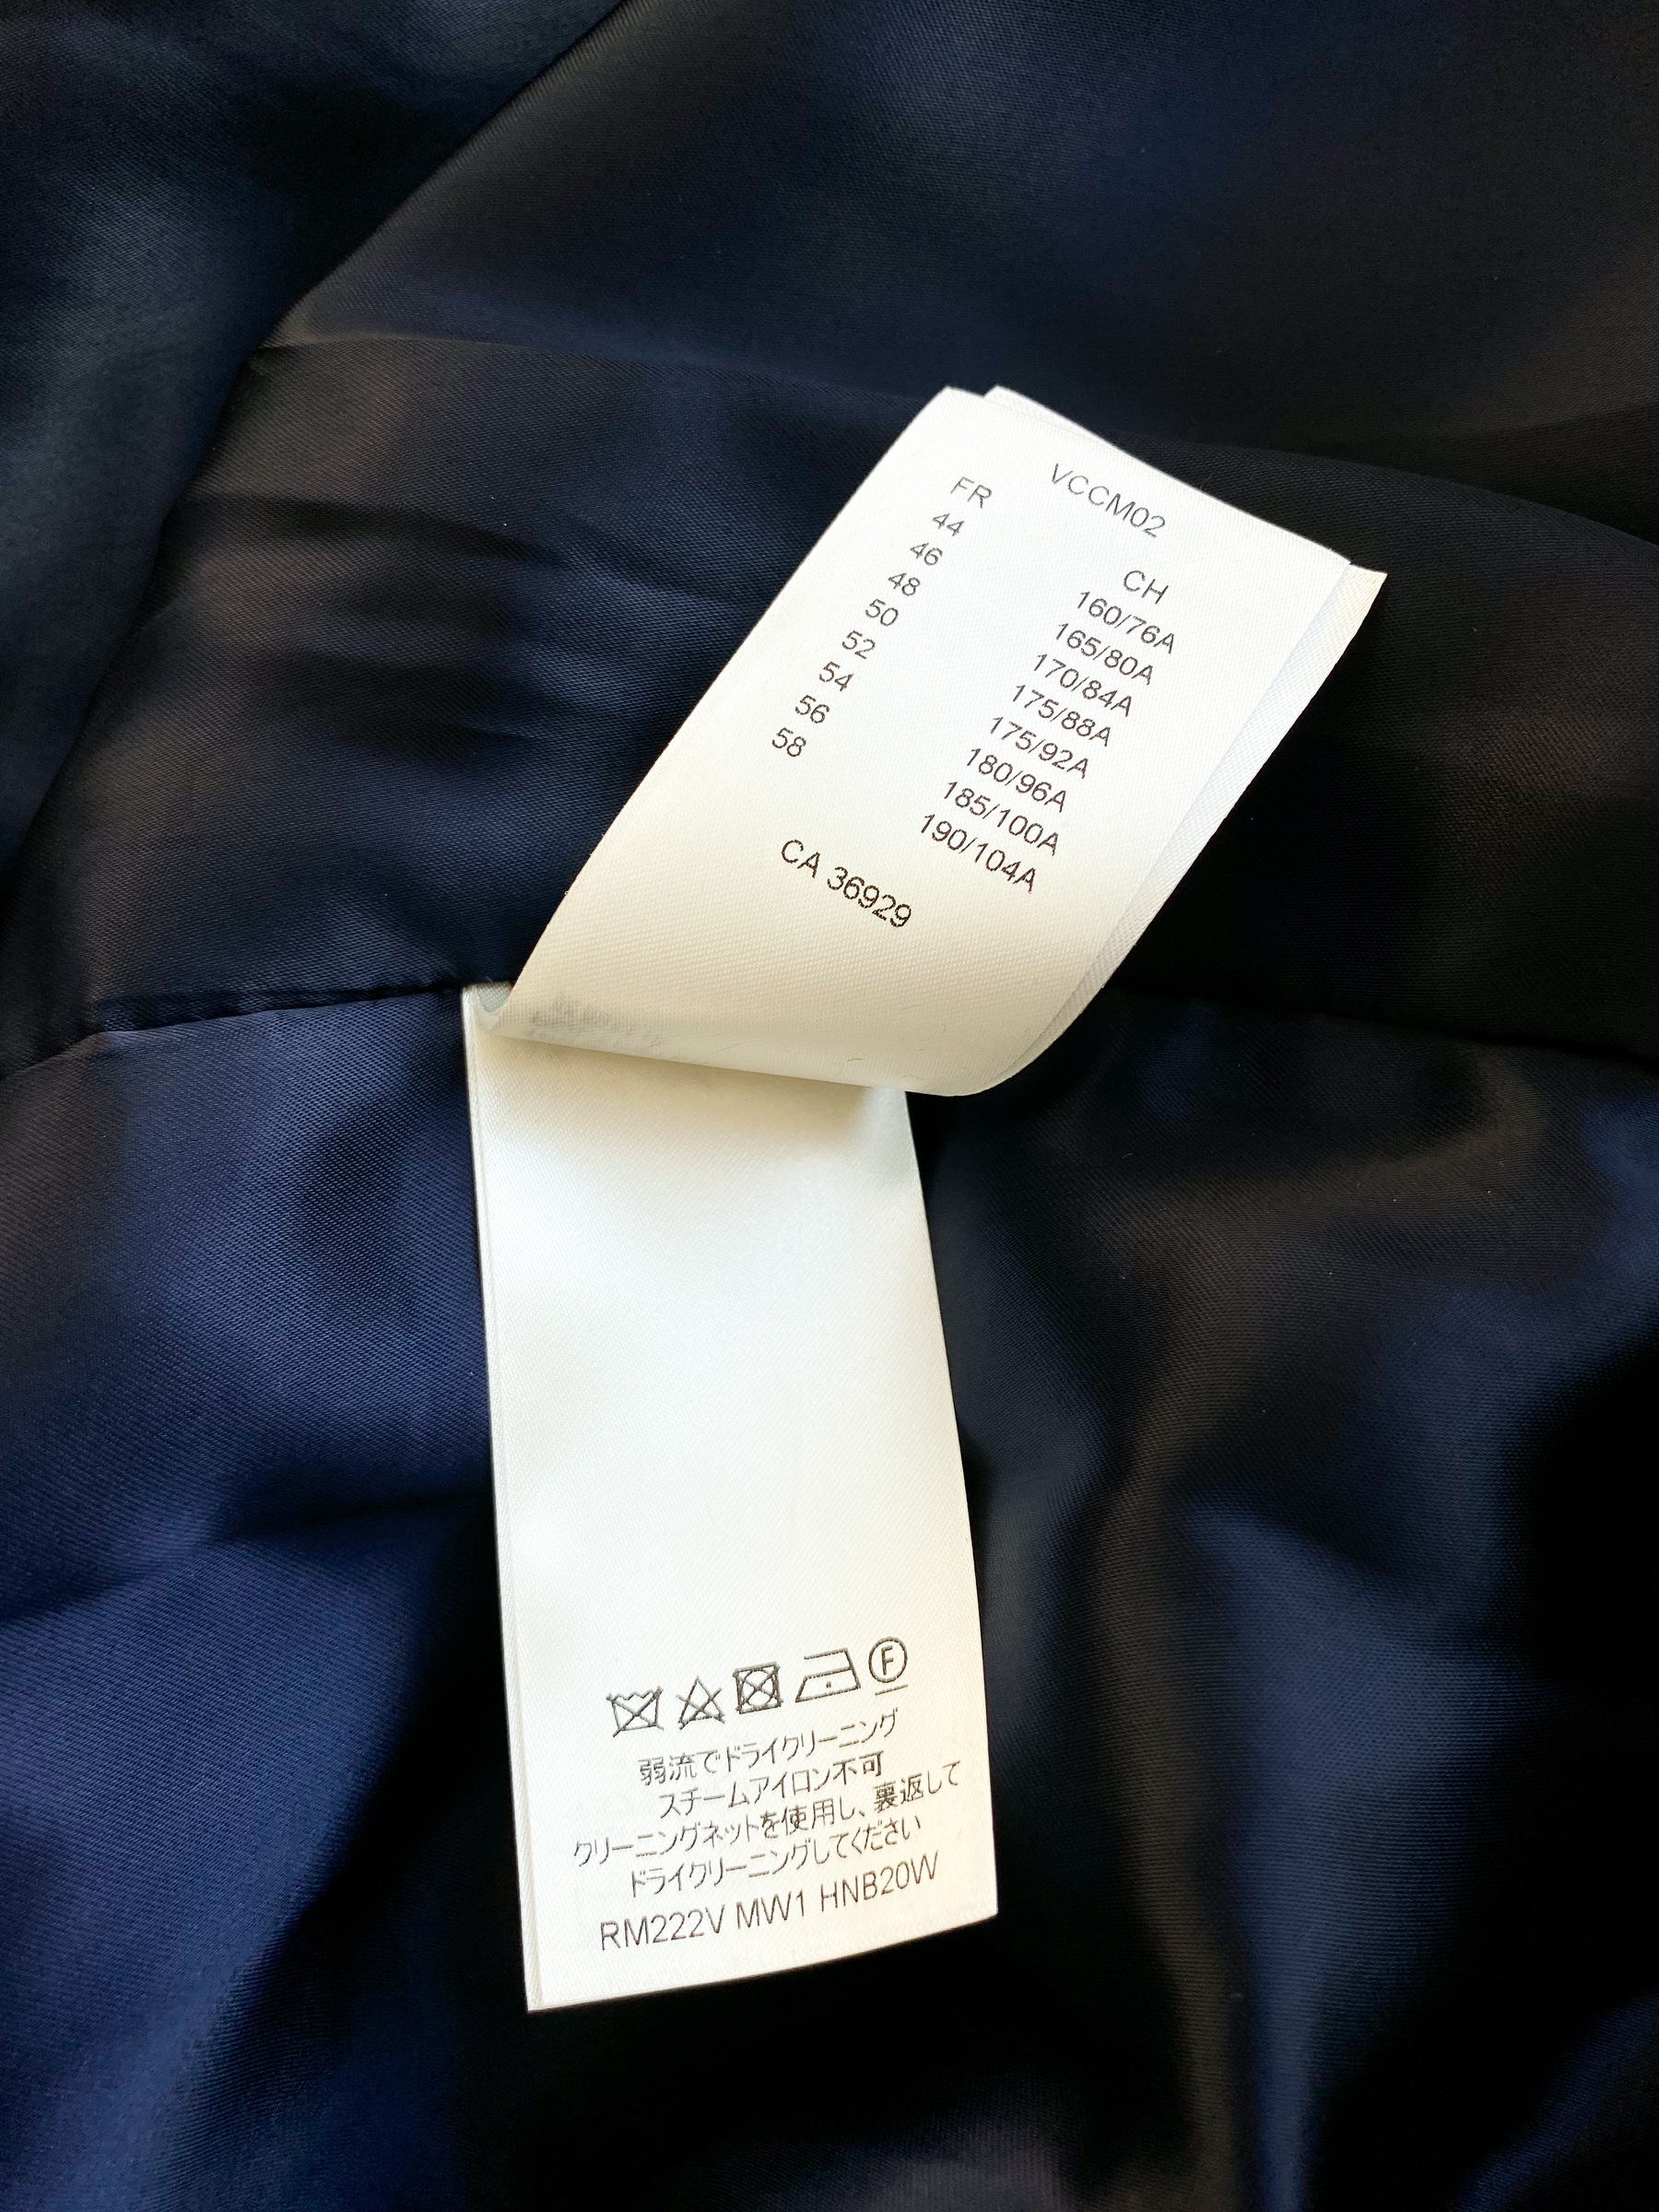 Louis Vuitton Karakoram Shirt Jacket BLACK. Size 56